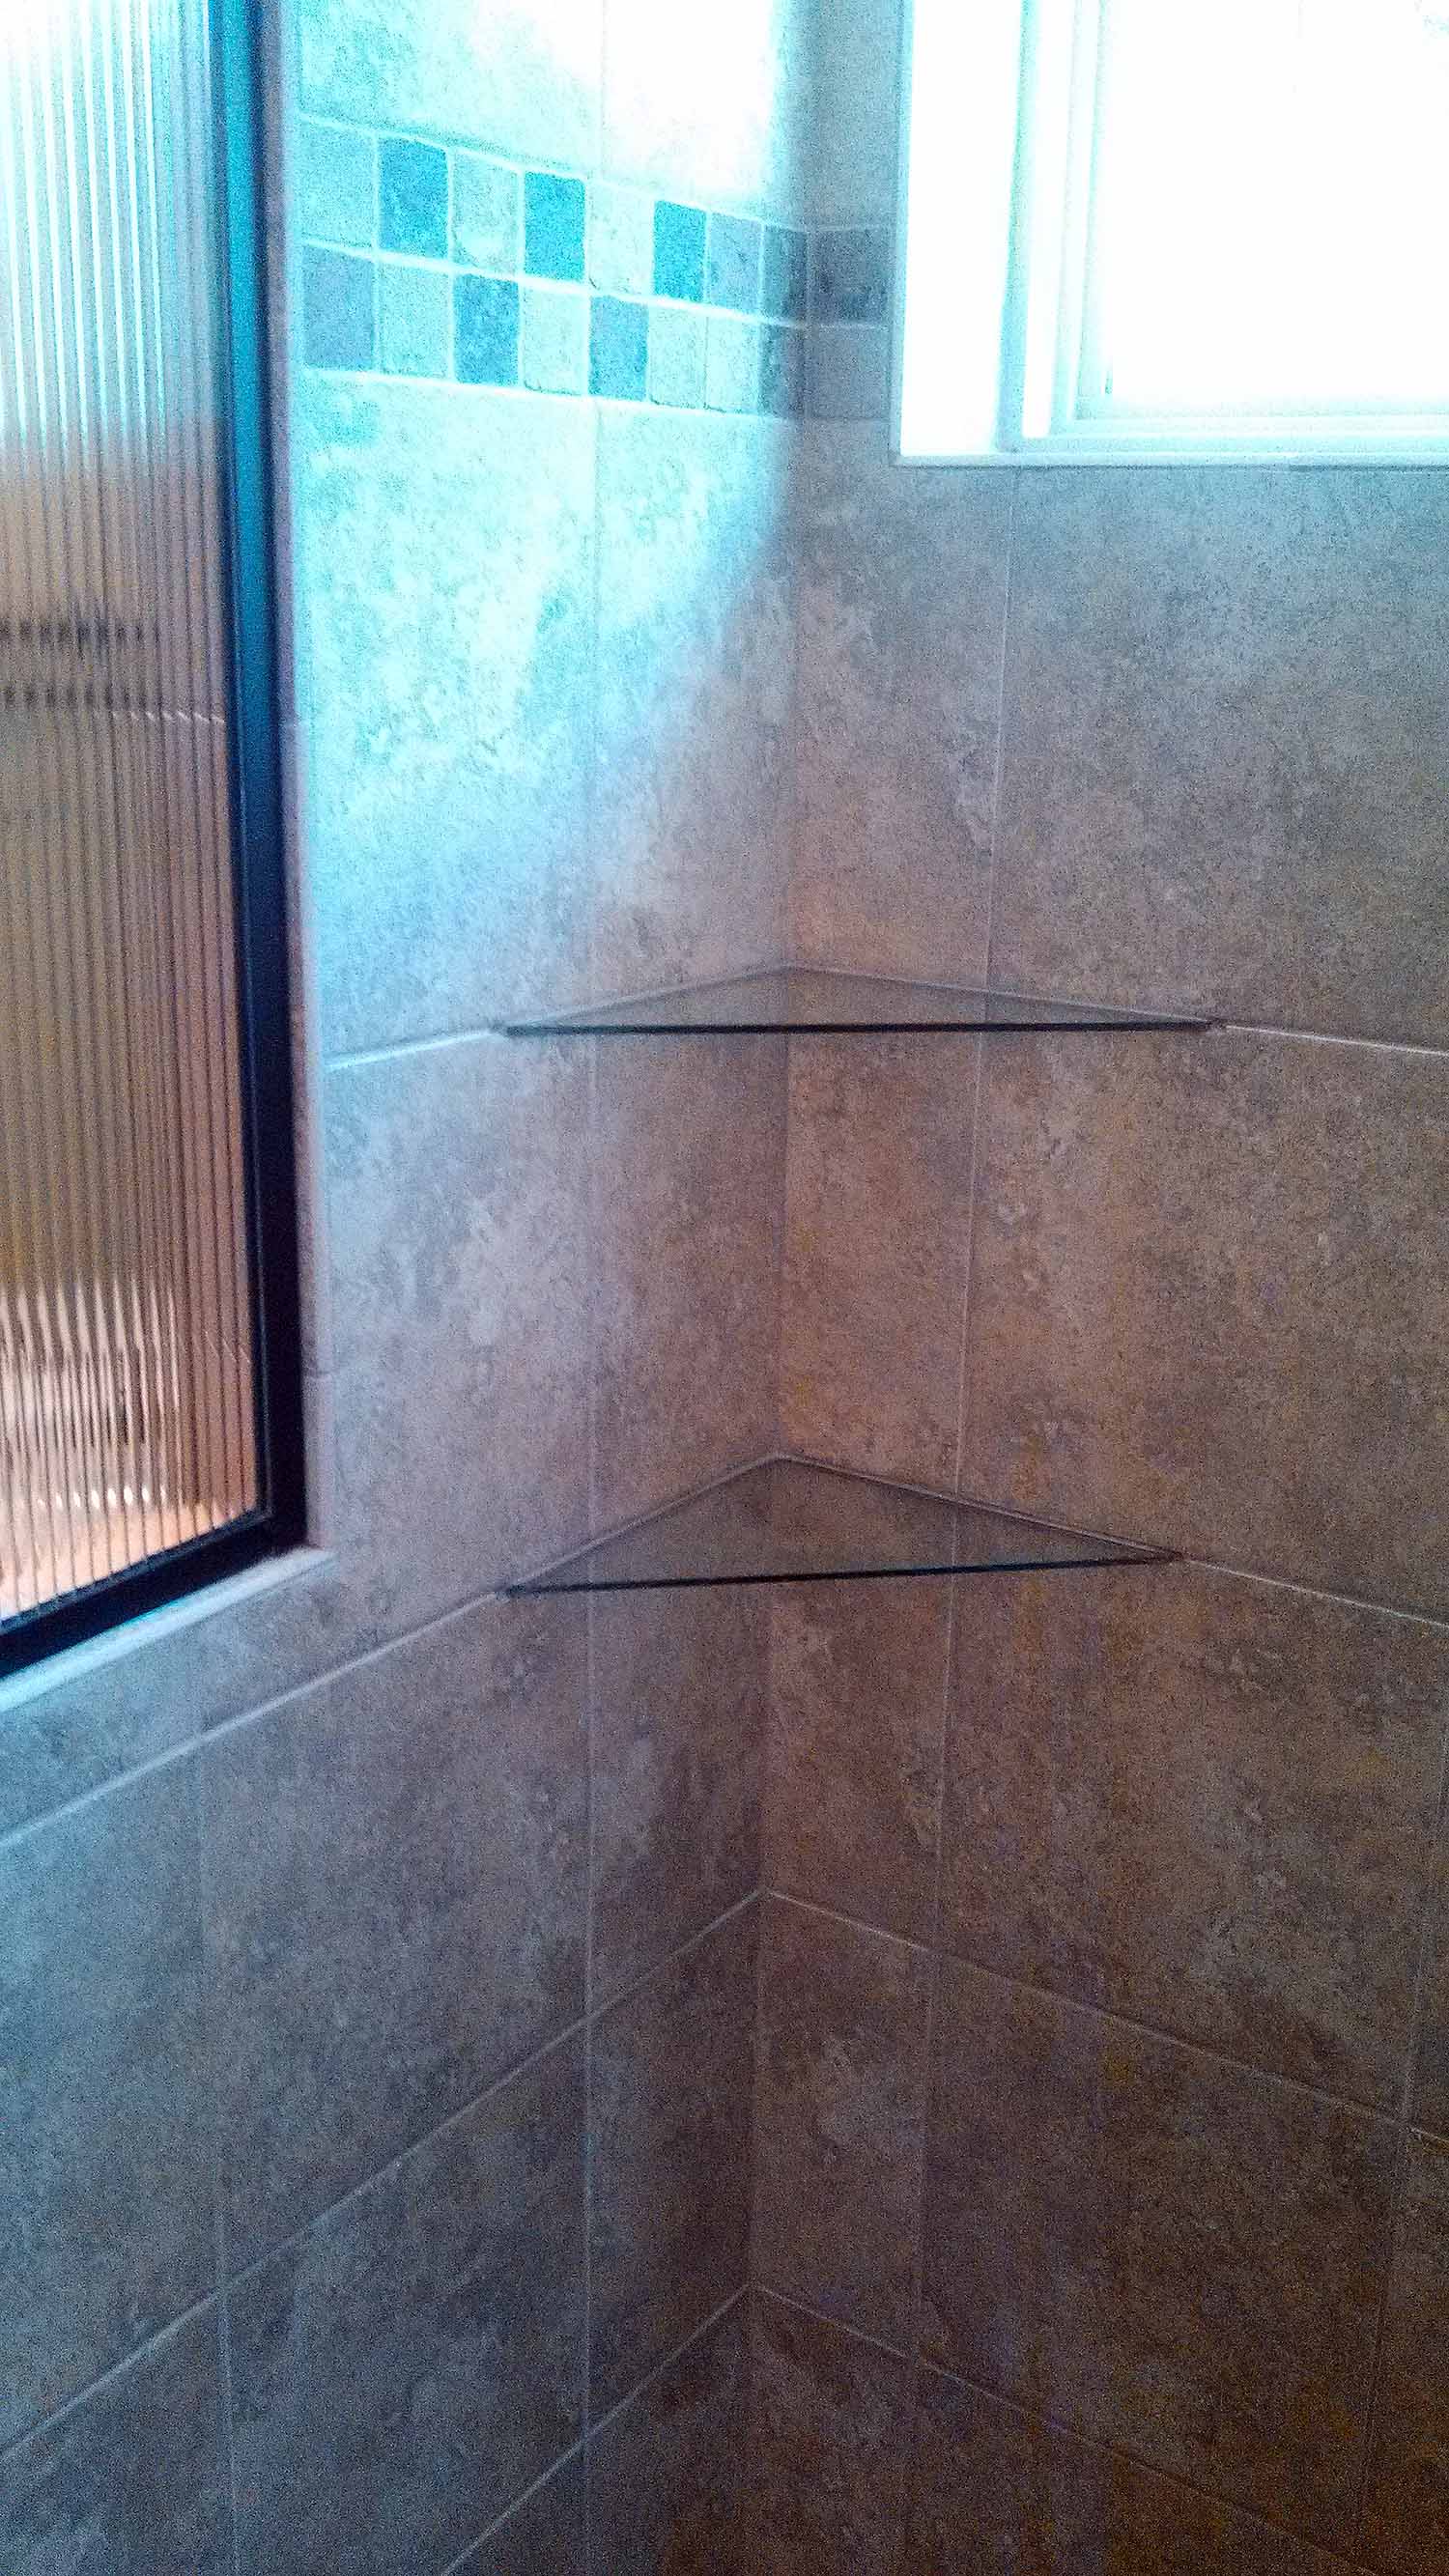 Glass corner shelves in tile shower